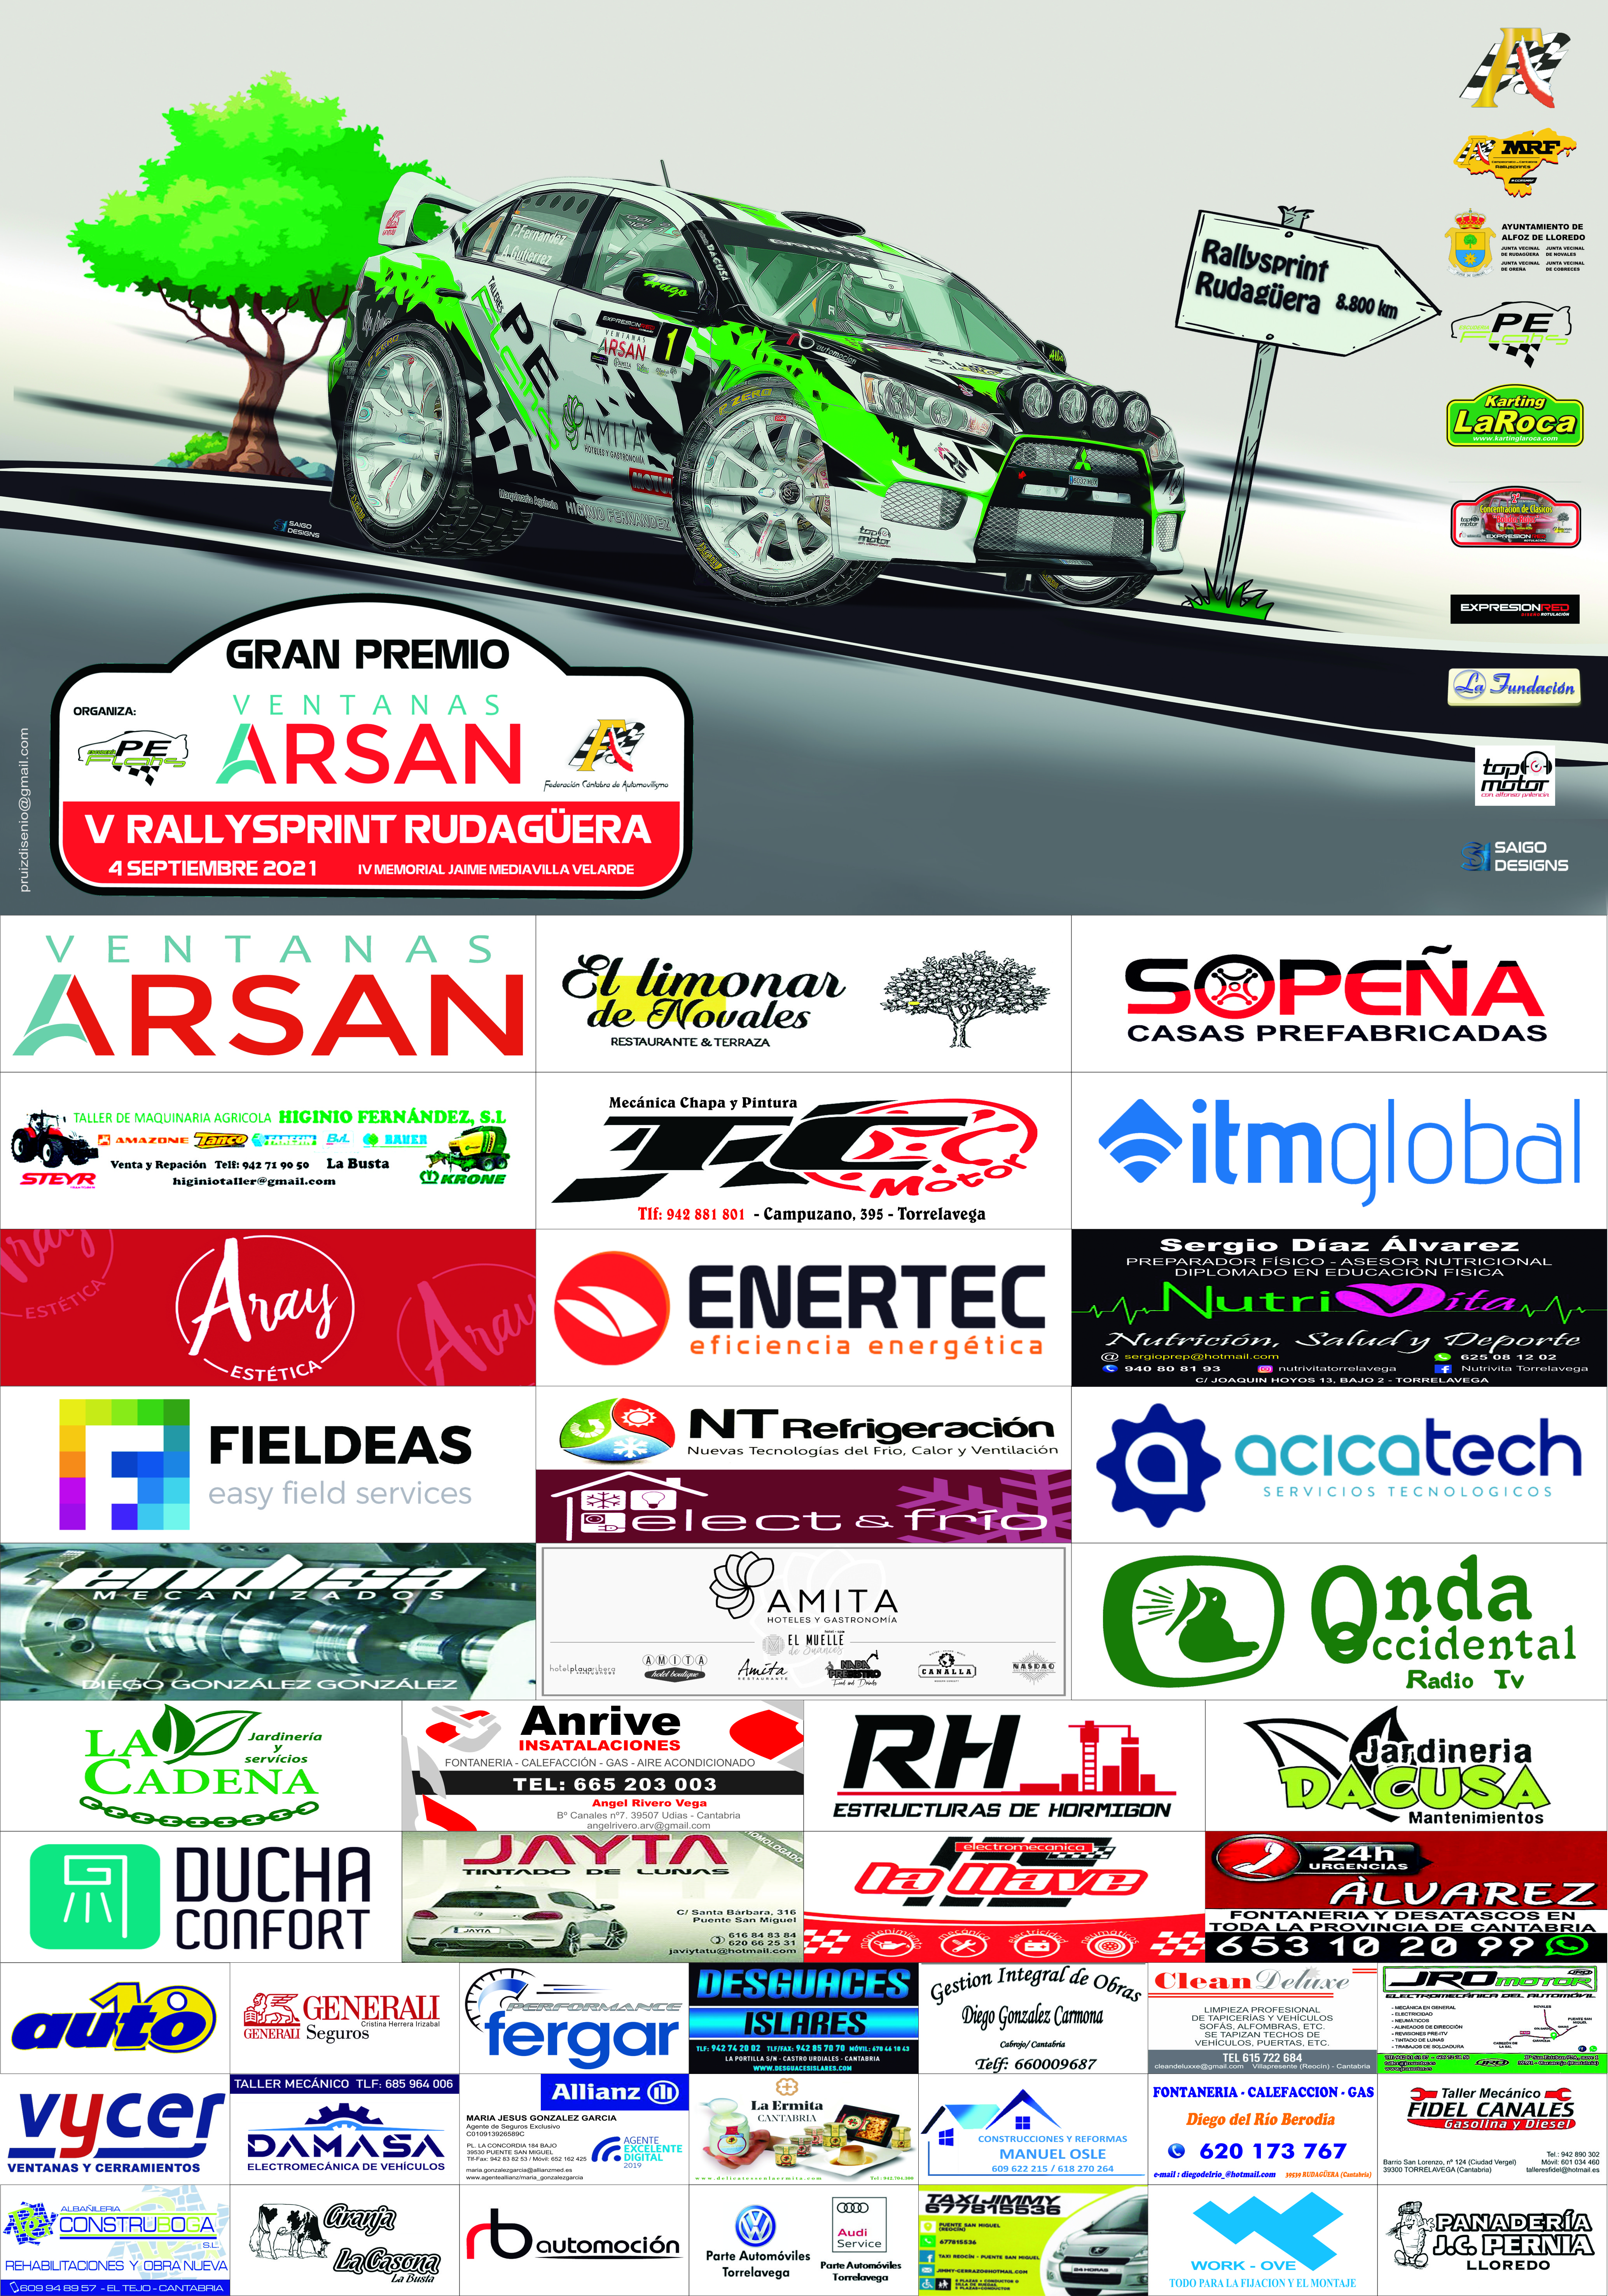 tercera prueba del campeonato de Cantabria de Rallyes MRF Tyres.